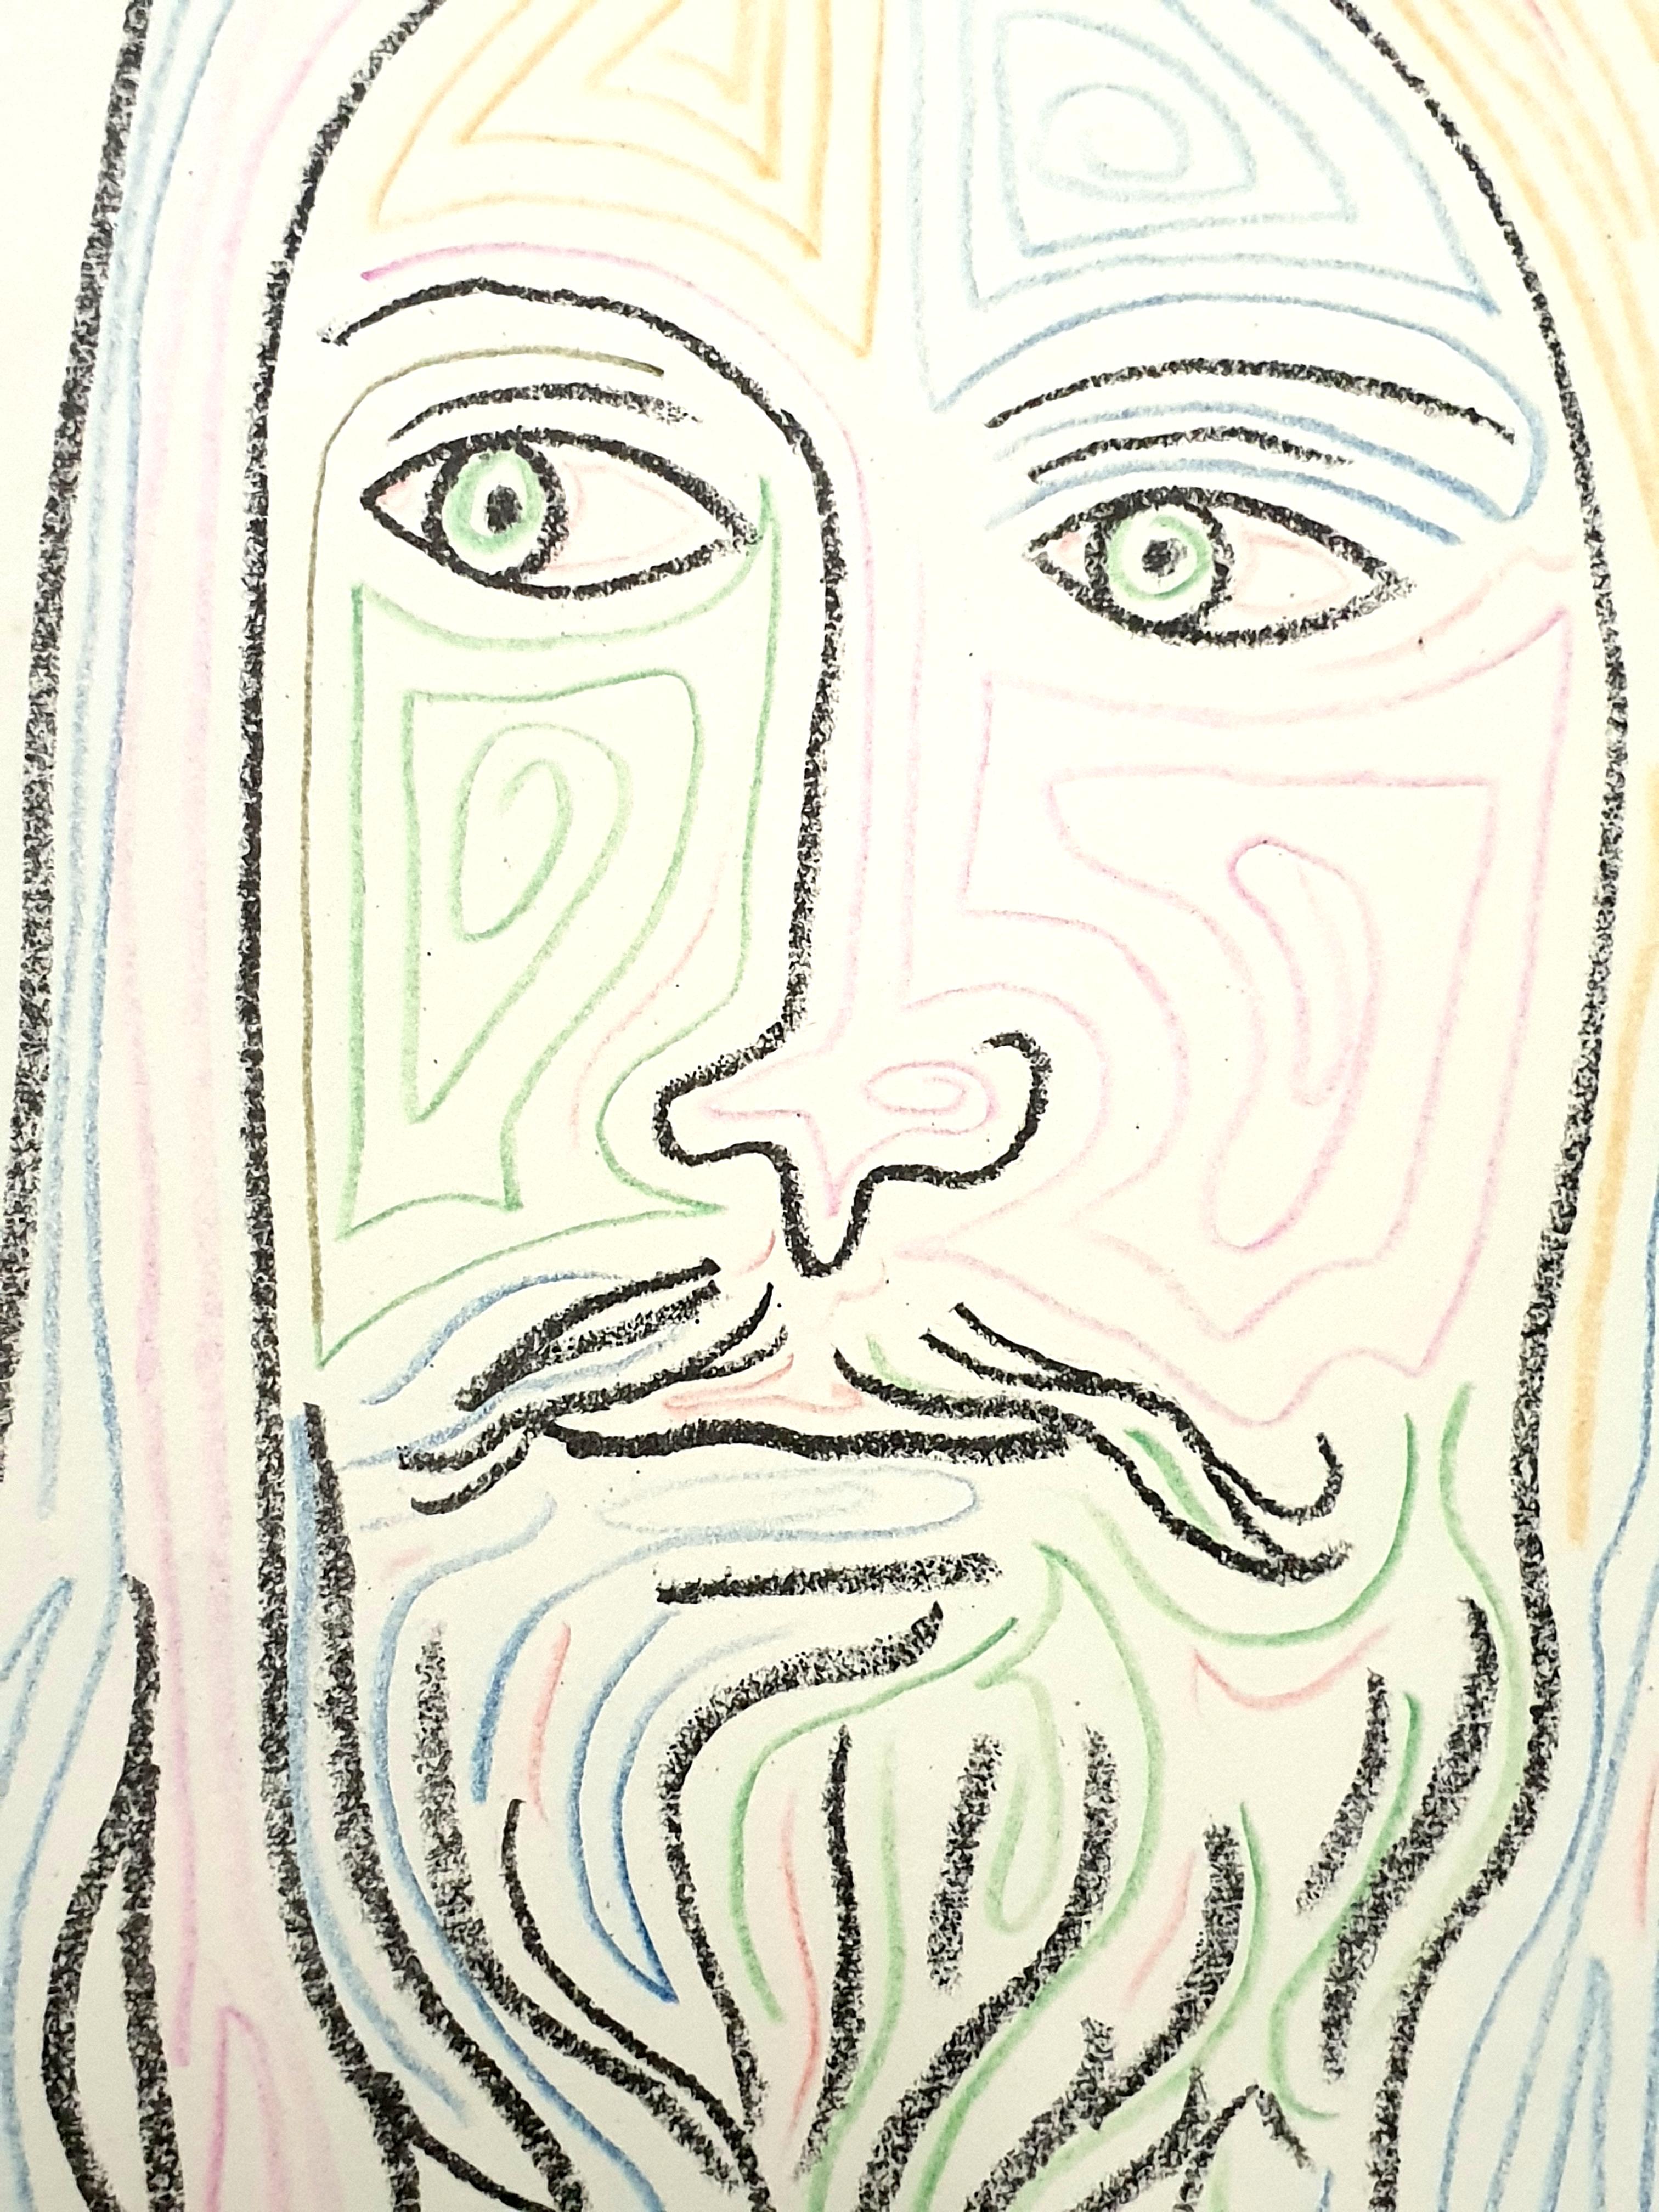 Jean Cocteau - Le Christ - Lithographie originale signée et coloriée à la main
Signé dans la plaque
Signé et daté au crayon de couleur.
Coloré à la main au crayon.
Dimensions : 50.5 x 33 cm
1957
Provenance : Succession Dermit, héritier de